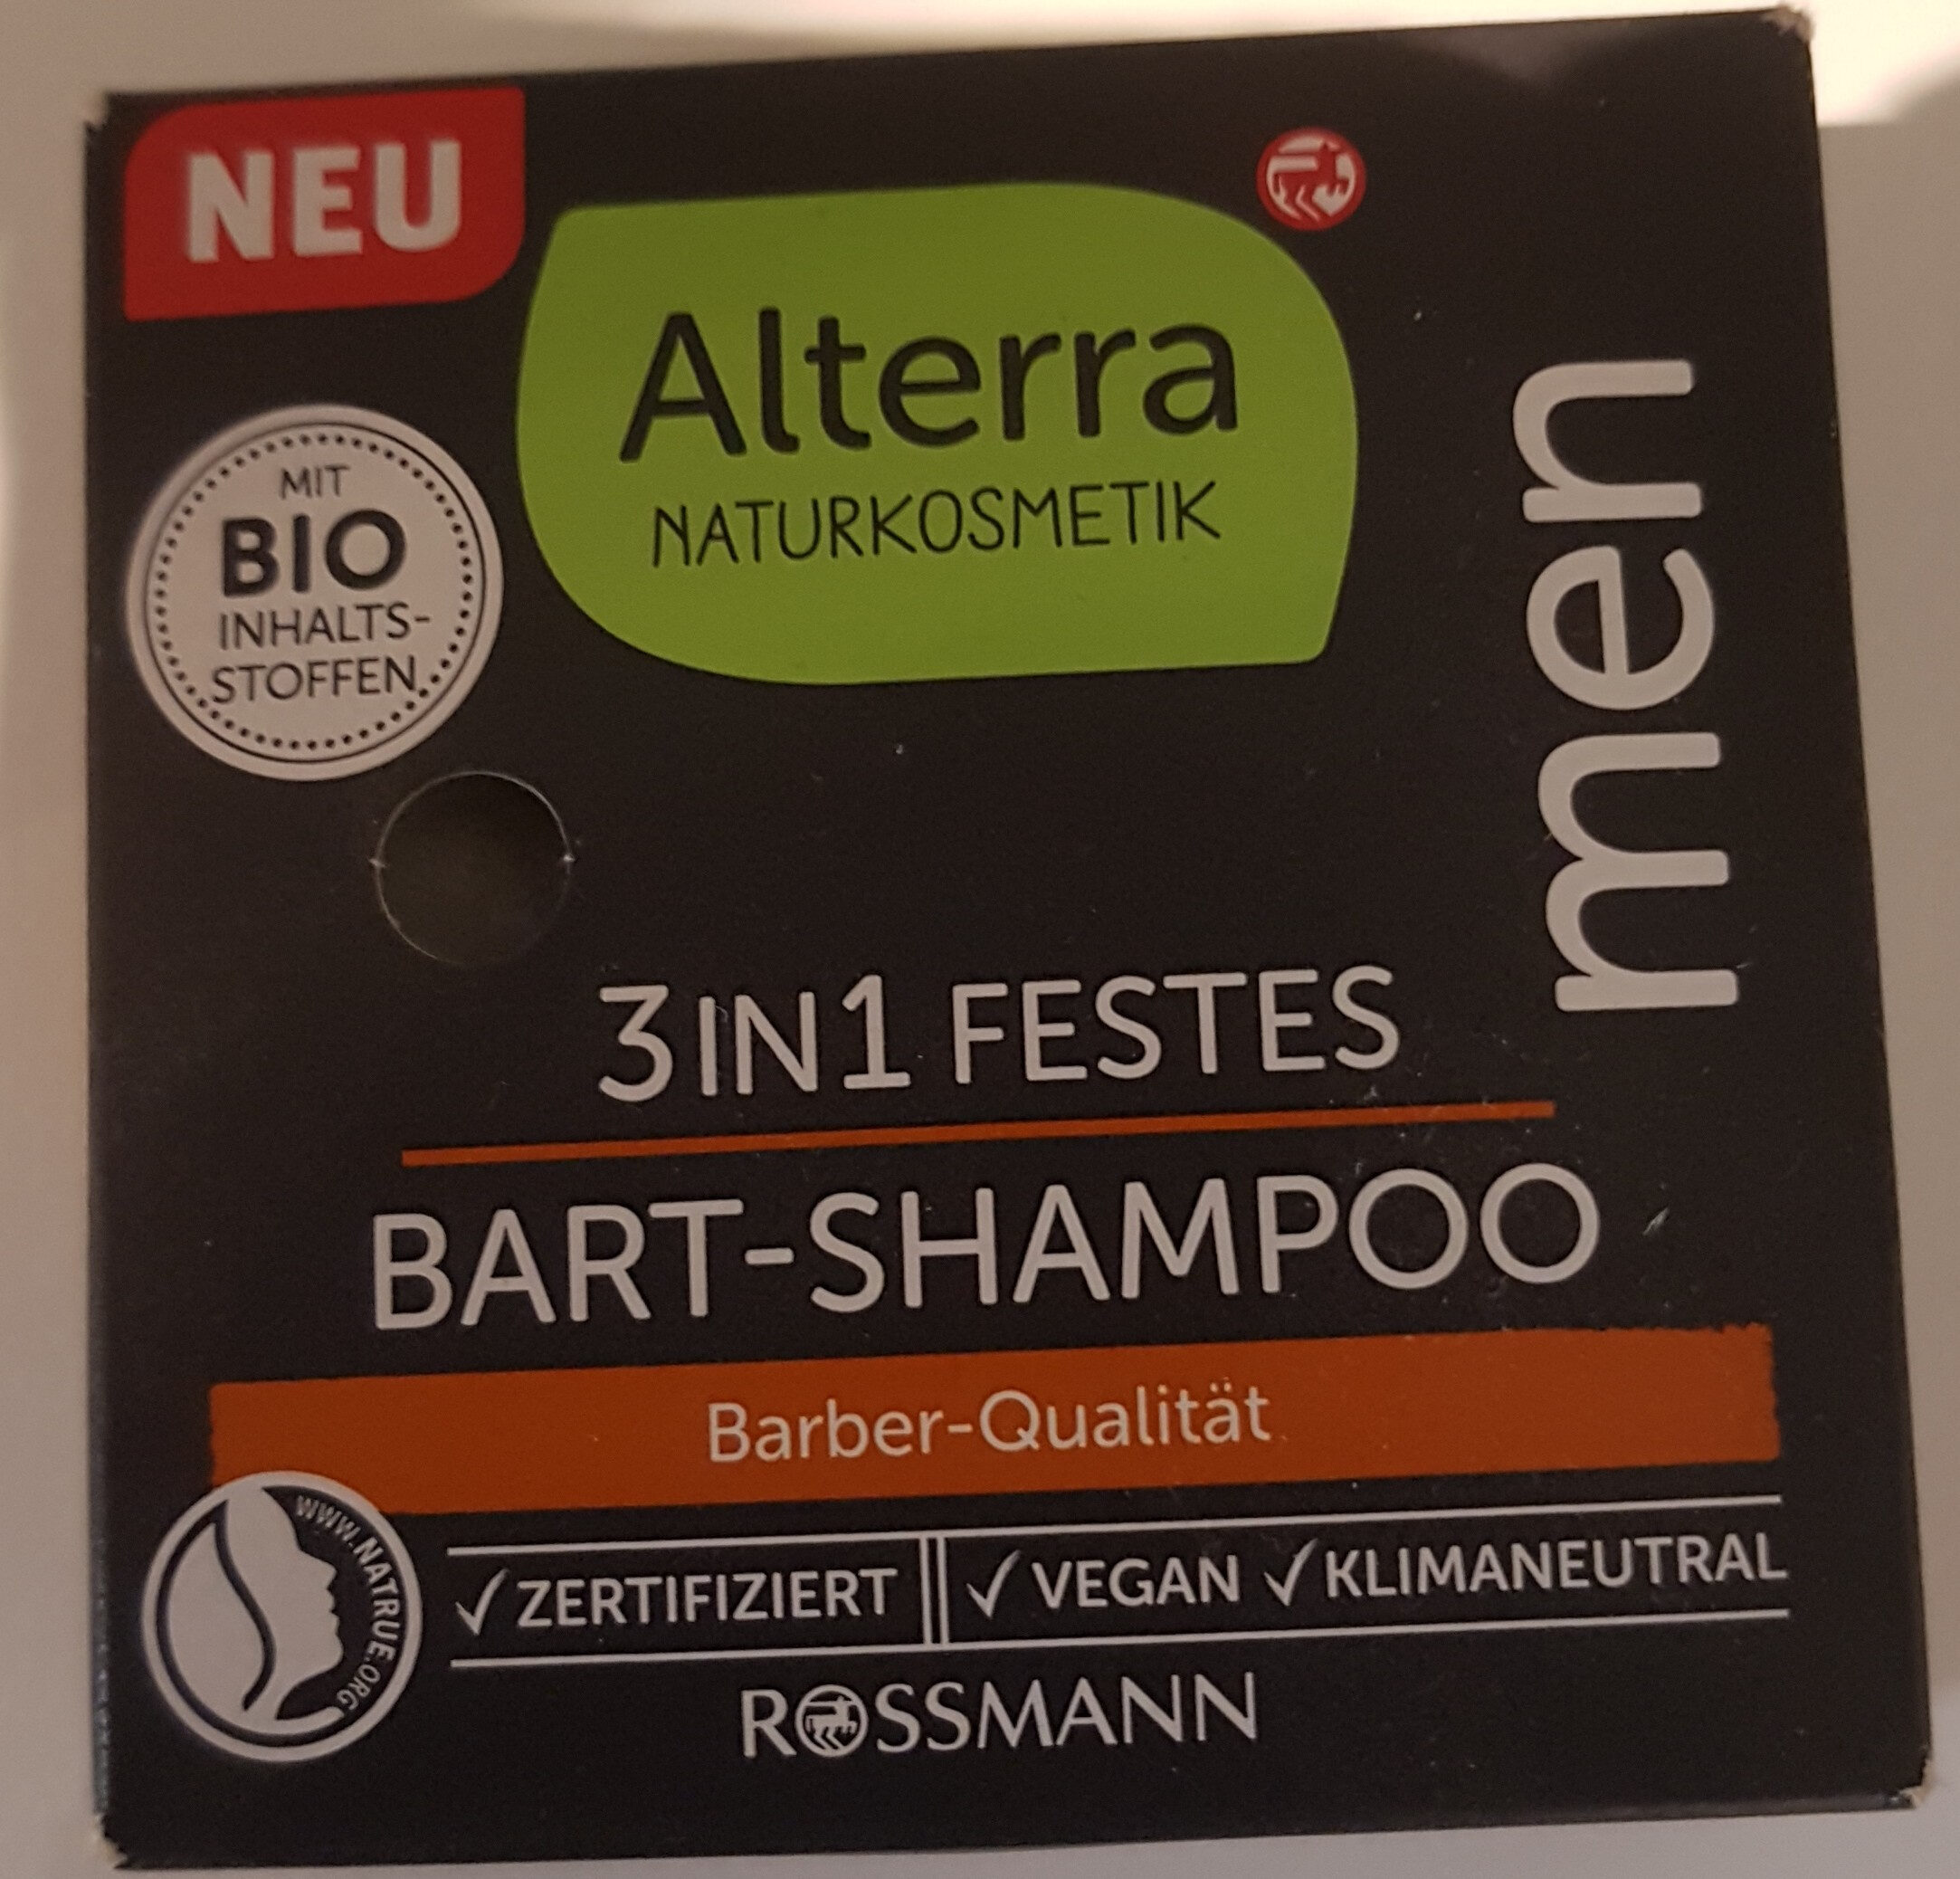 Alterra 3in1 festes Bart-Shampoo - Produit - de